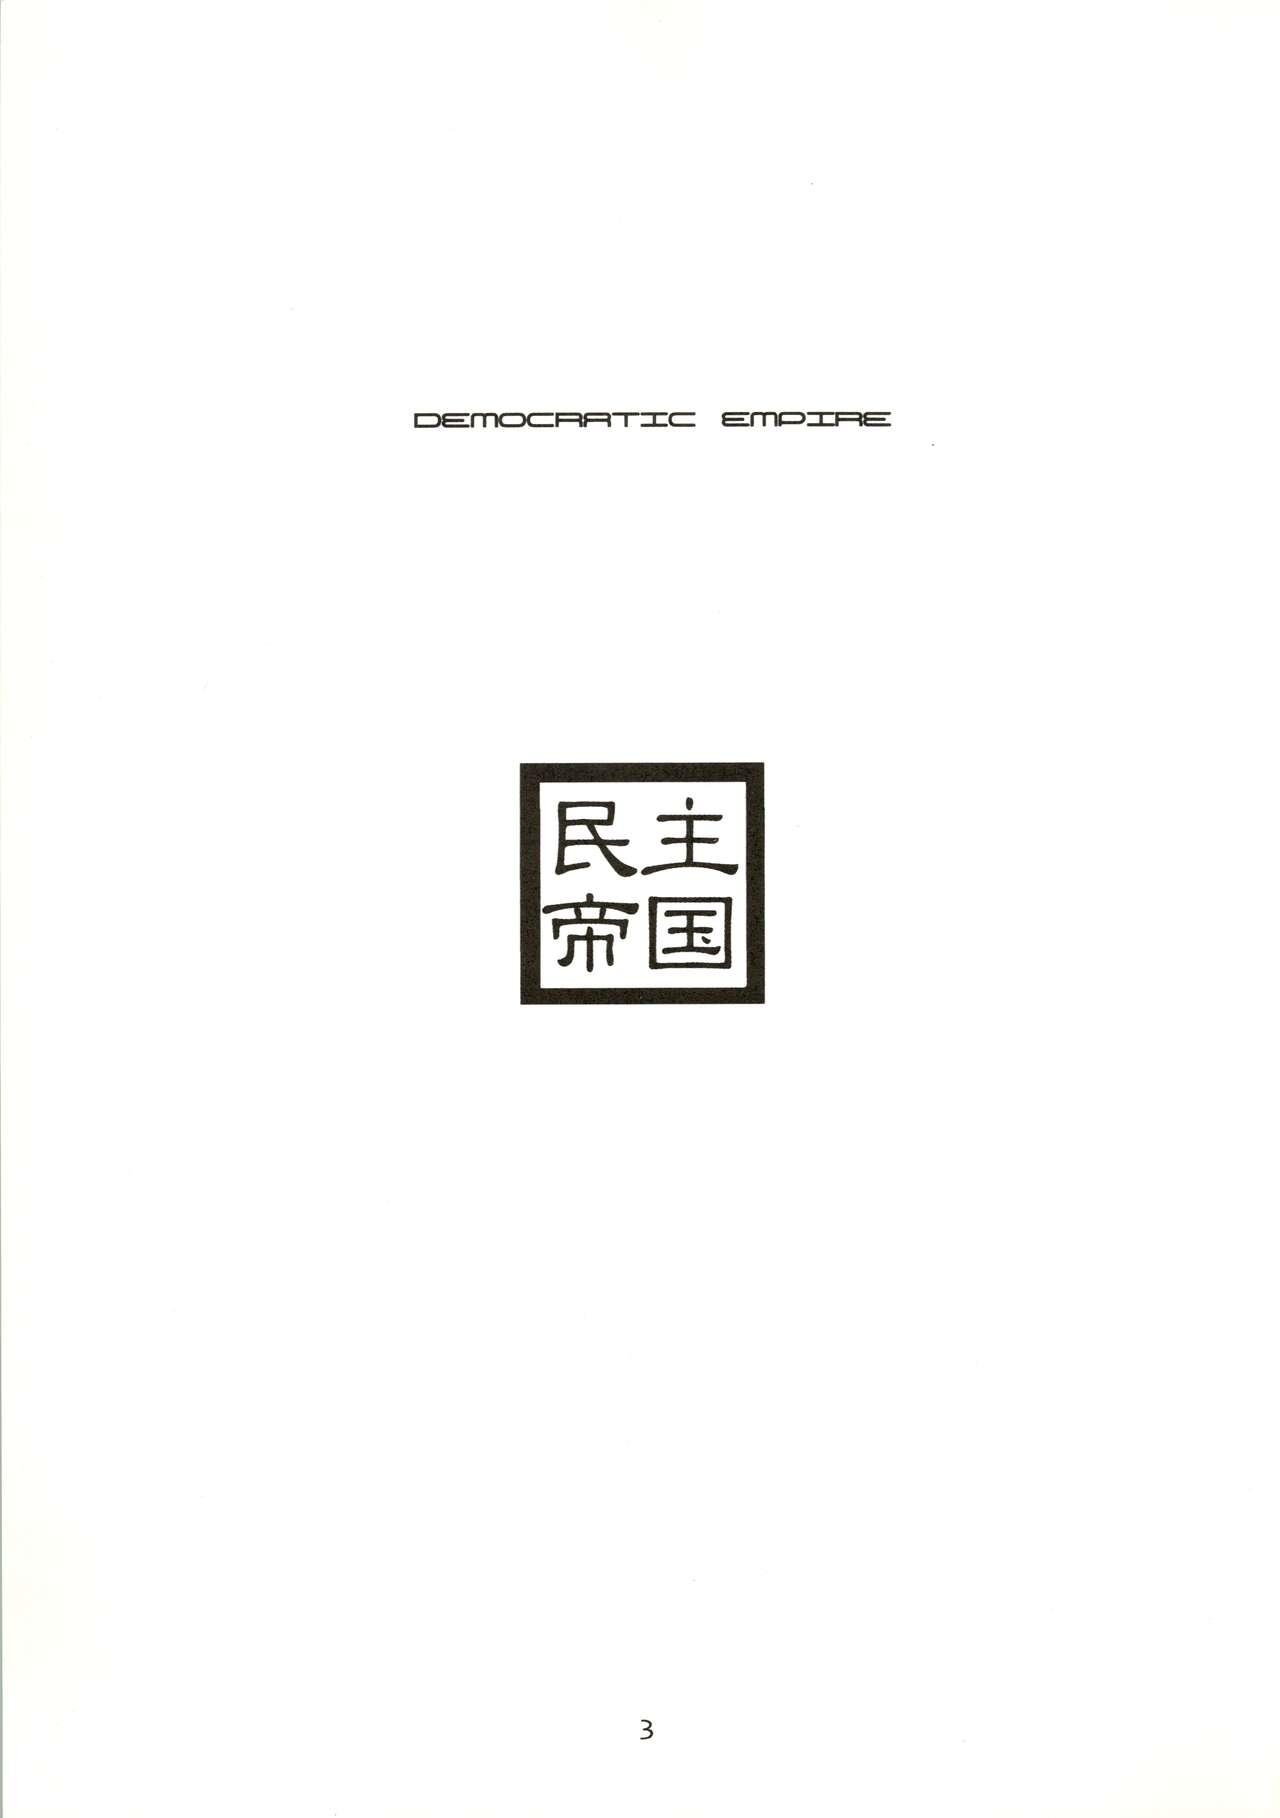 Minshu Teikoku - Democratic Empire 2